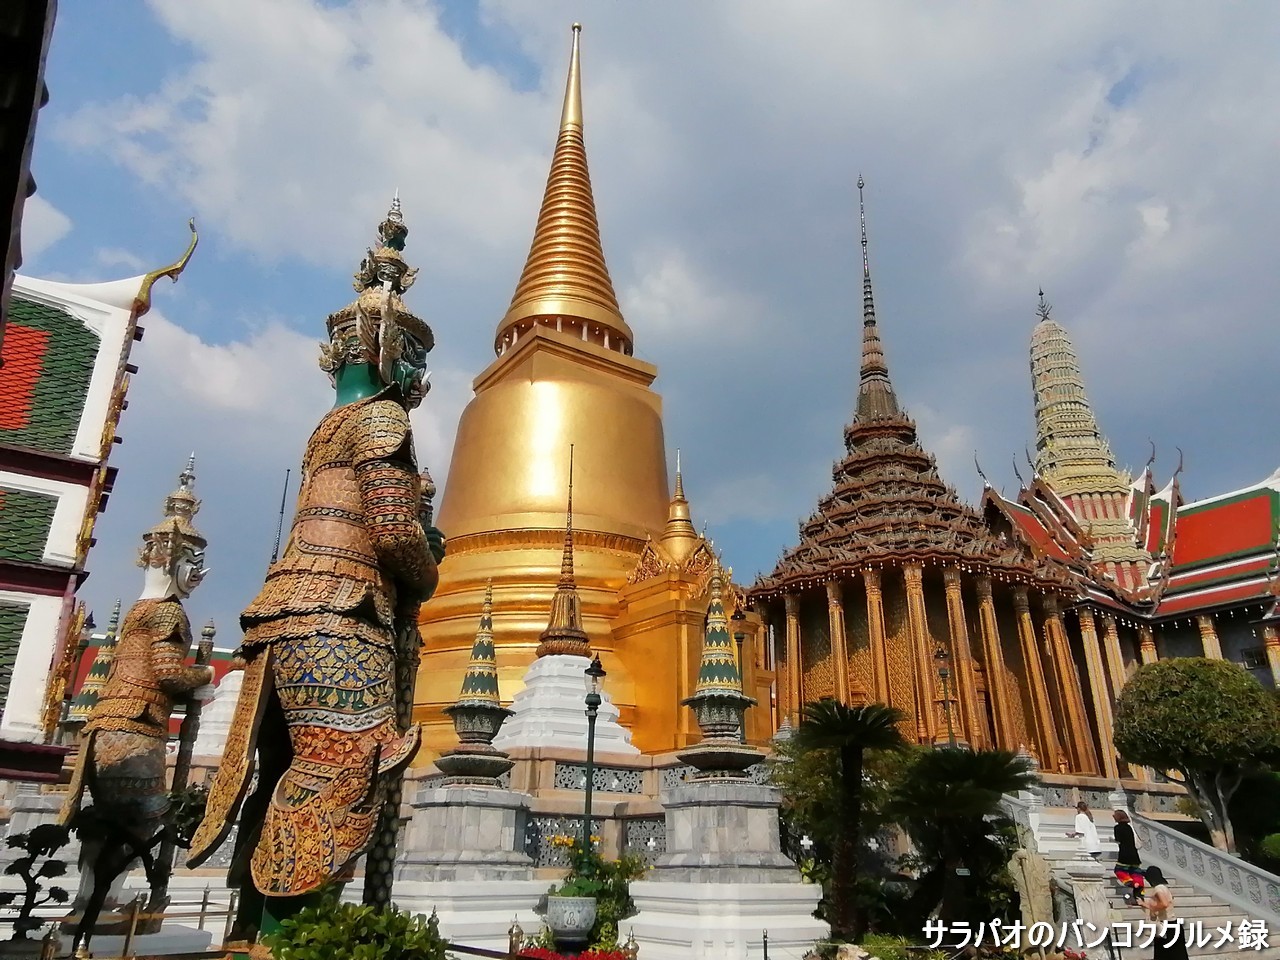 ワット・プラケオはタイで最高の格式と地位を誇る仏教寺院